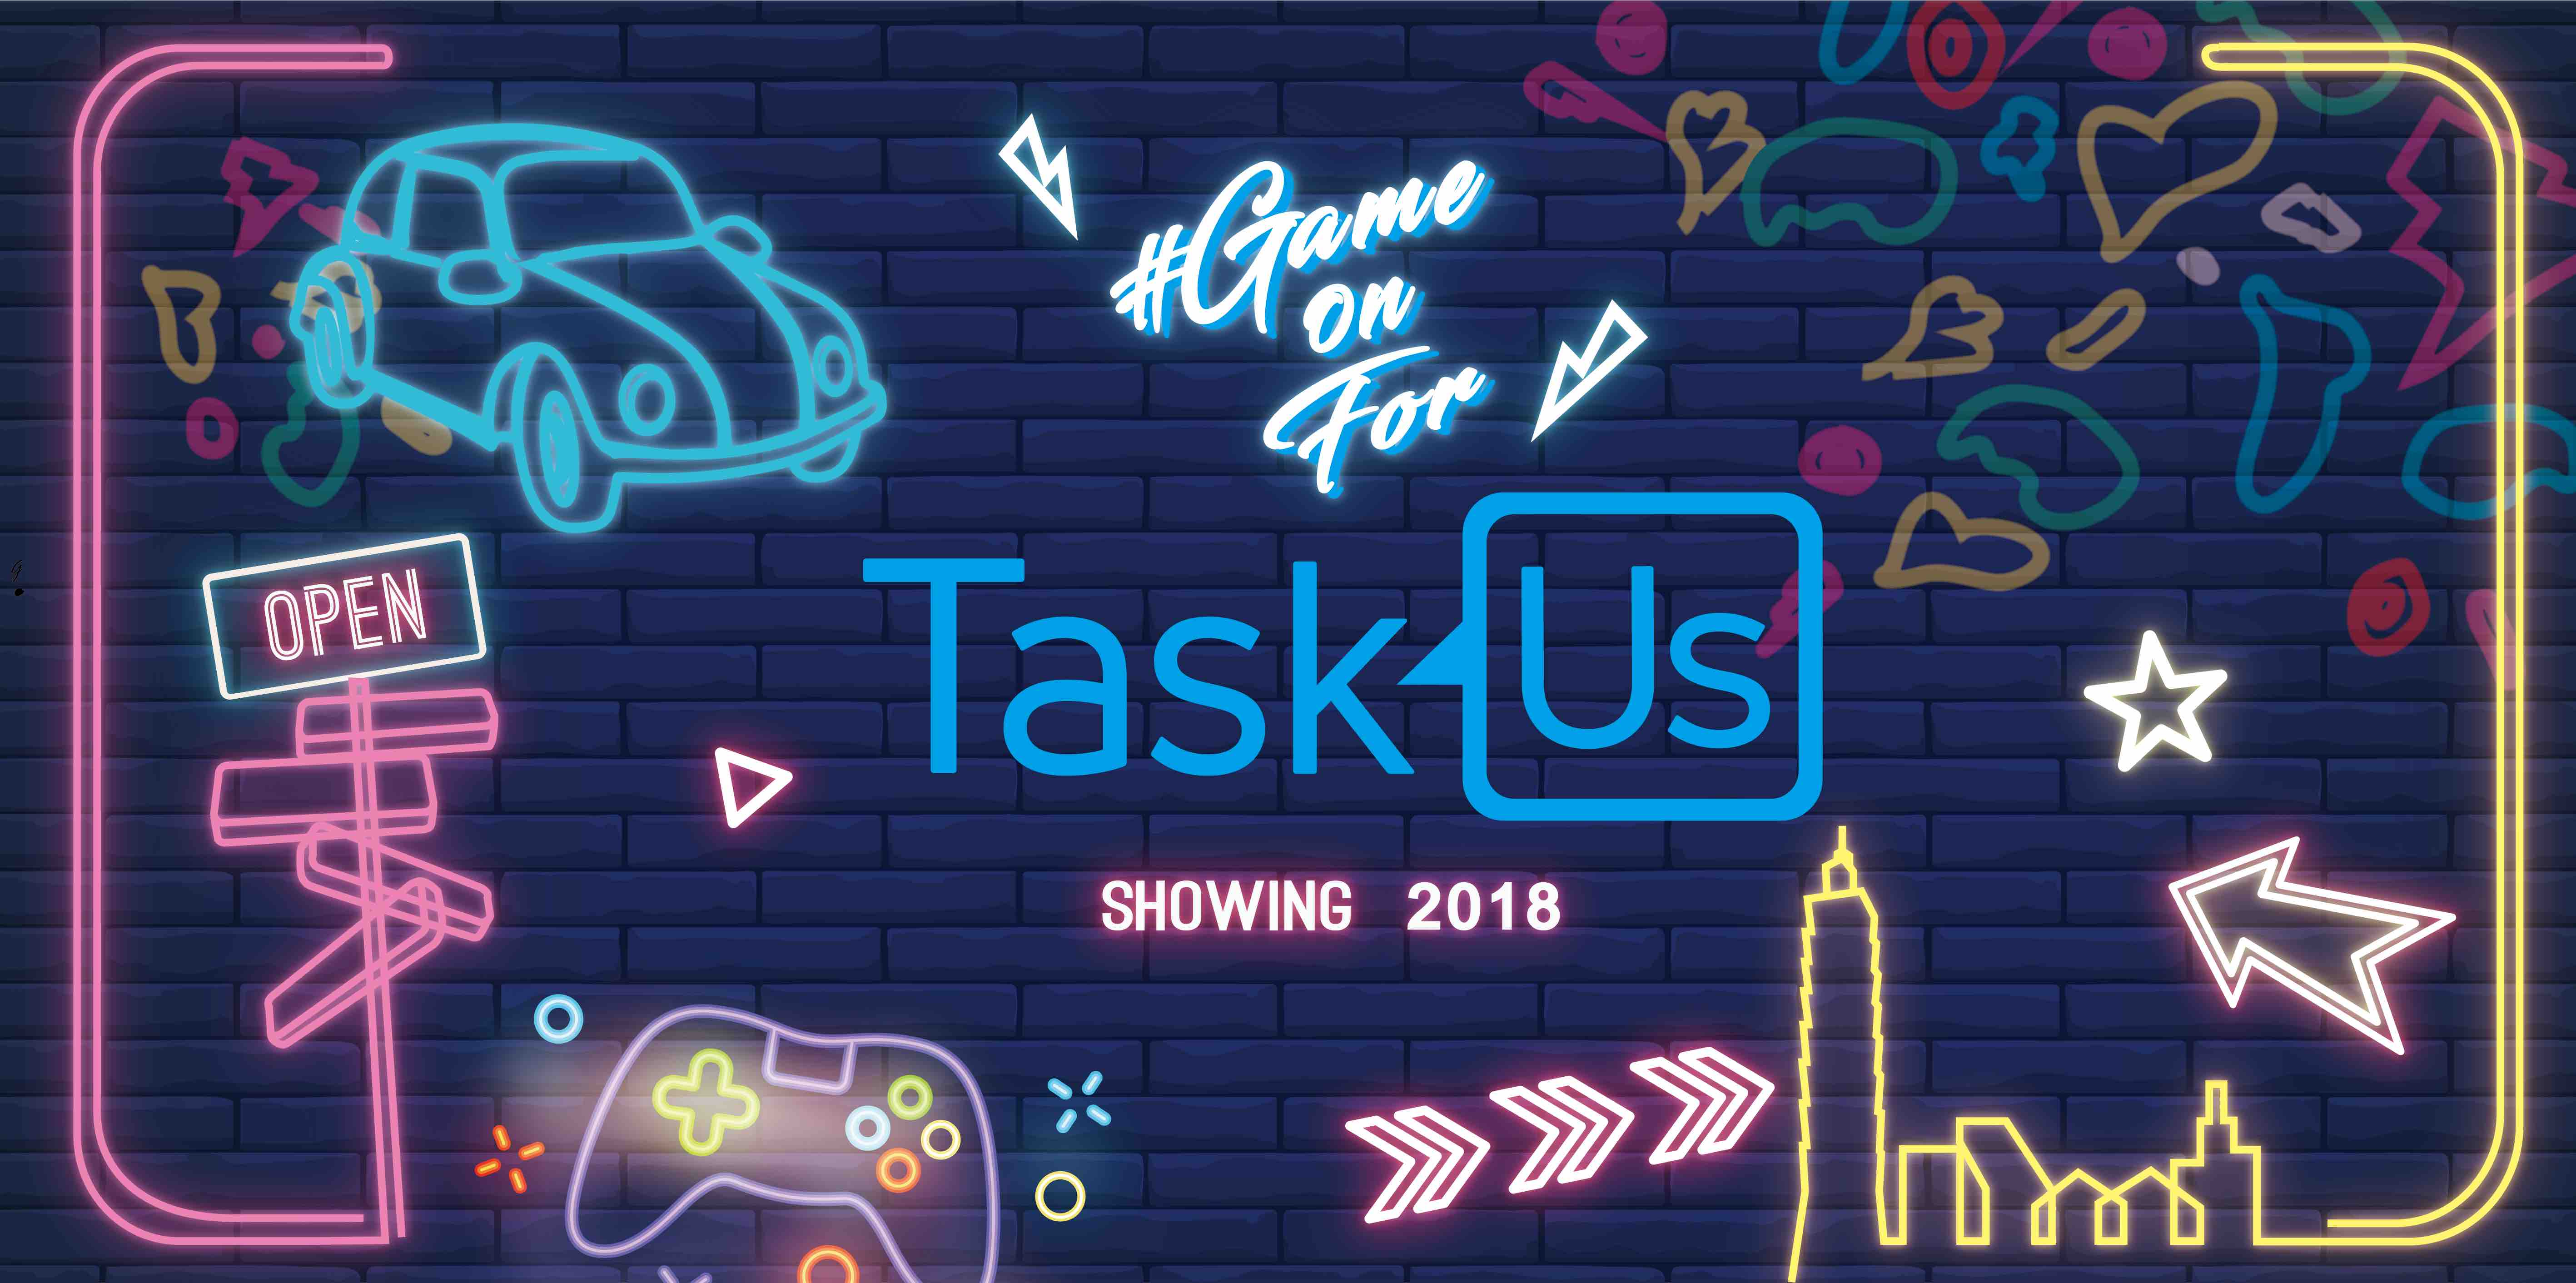 TaskUs台灣開幕派對